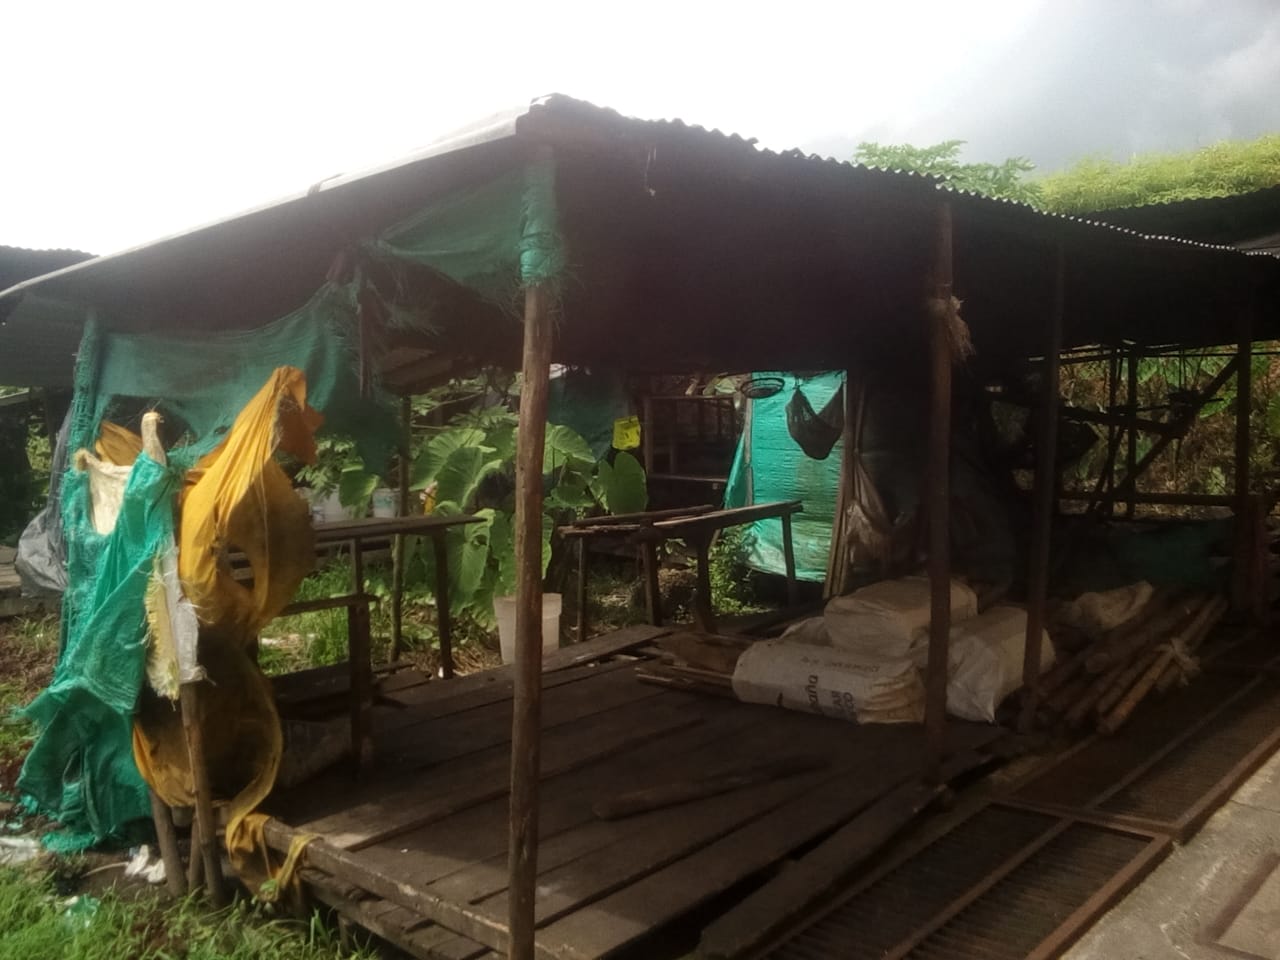 Una fotografía enviada a Human Rights Watch muestra las condiciones de vida de una comunidad indígena desplazada en Buenaventura, Colombia. Debido al limitado acceso al agua y a servicios de salud el coronavirus podría propagarse rápidamente en la comunid